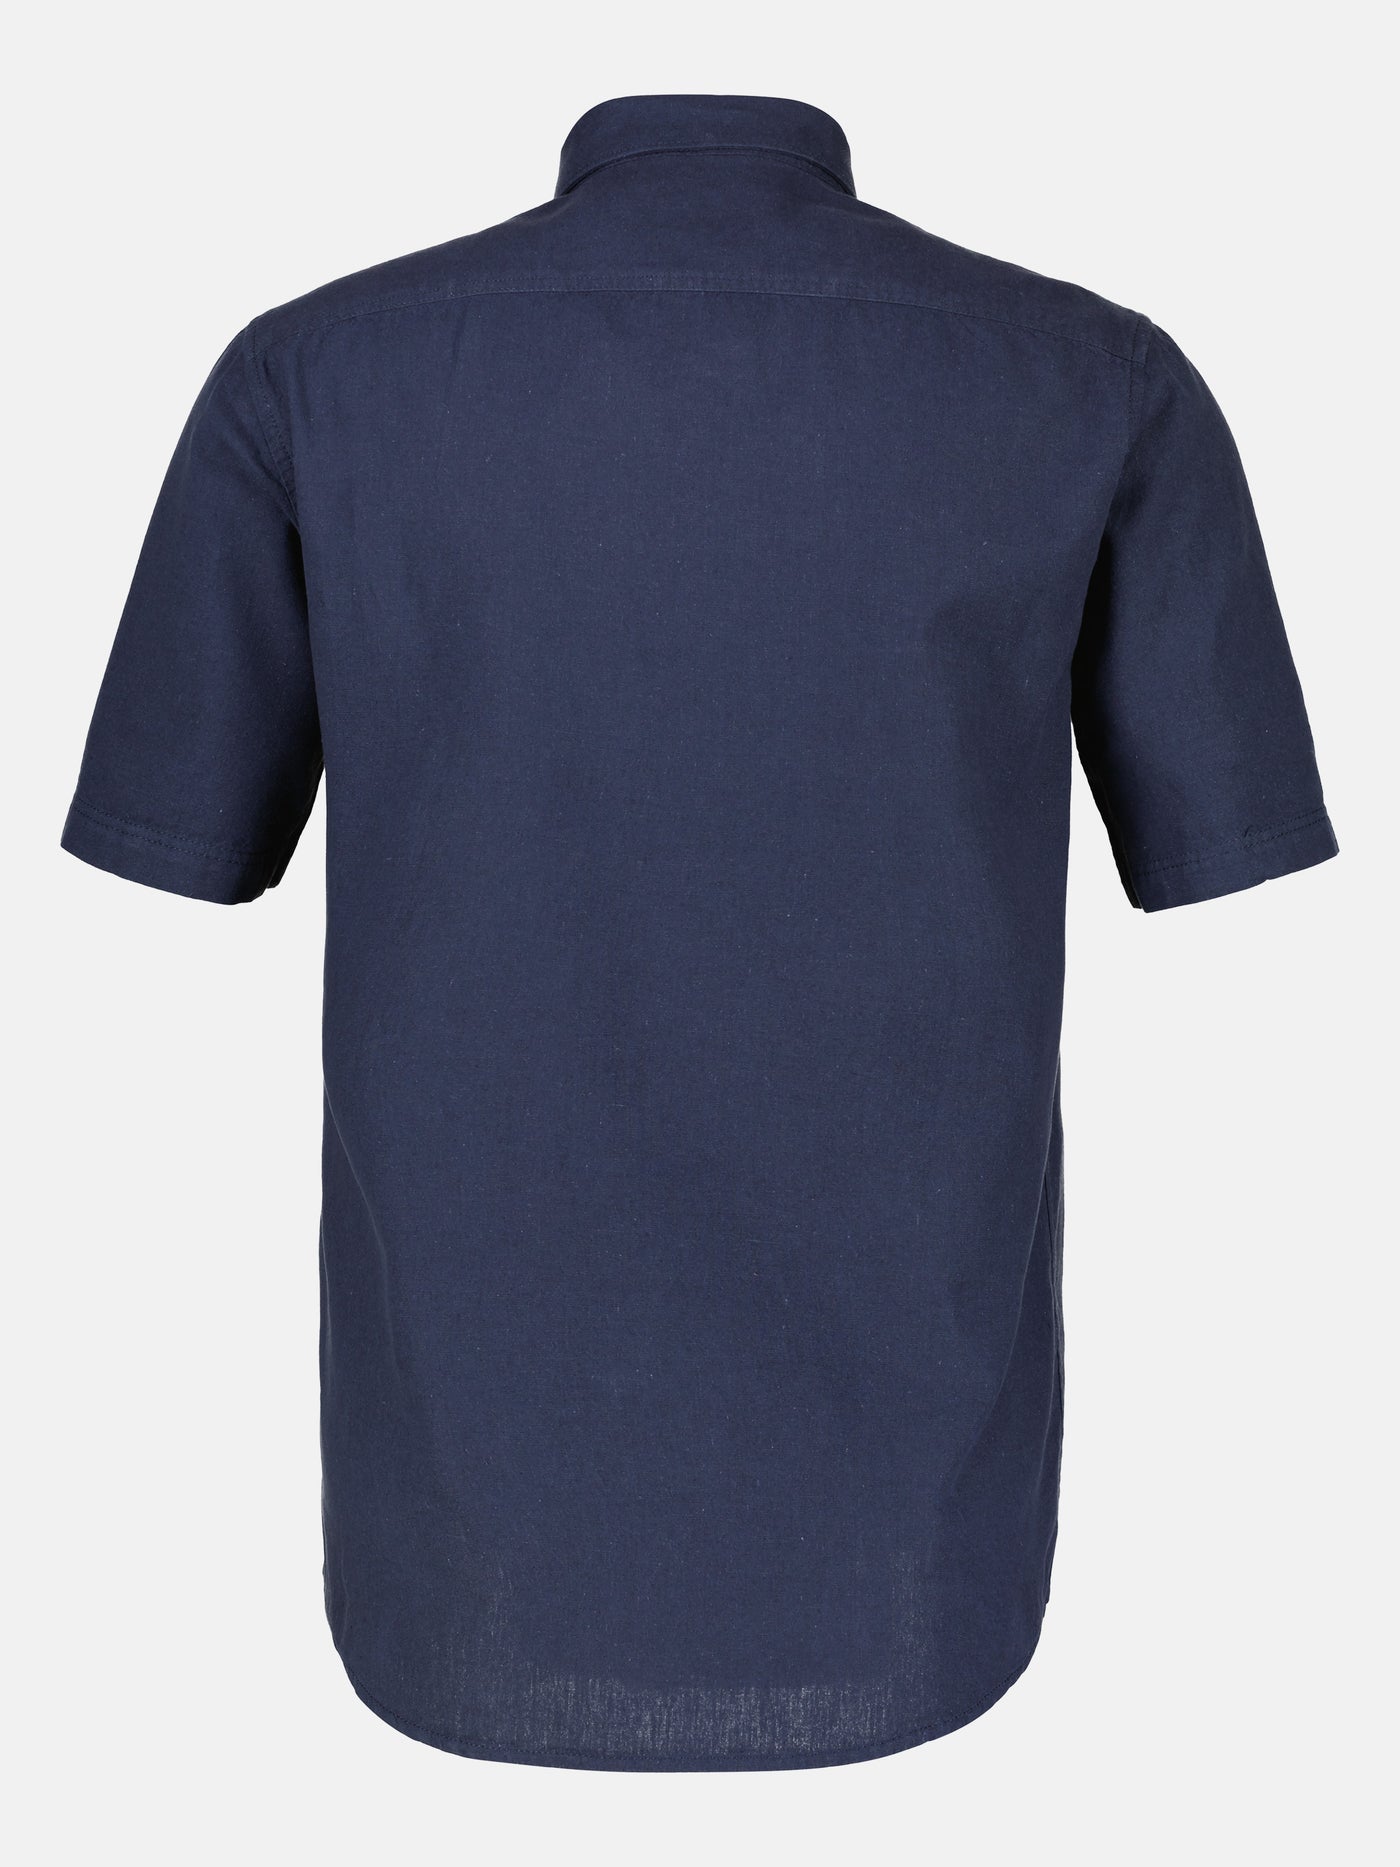 Short-sleeved shirt, cotton-linen mix